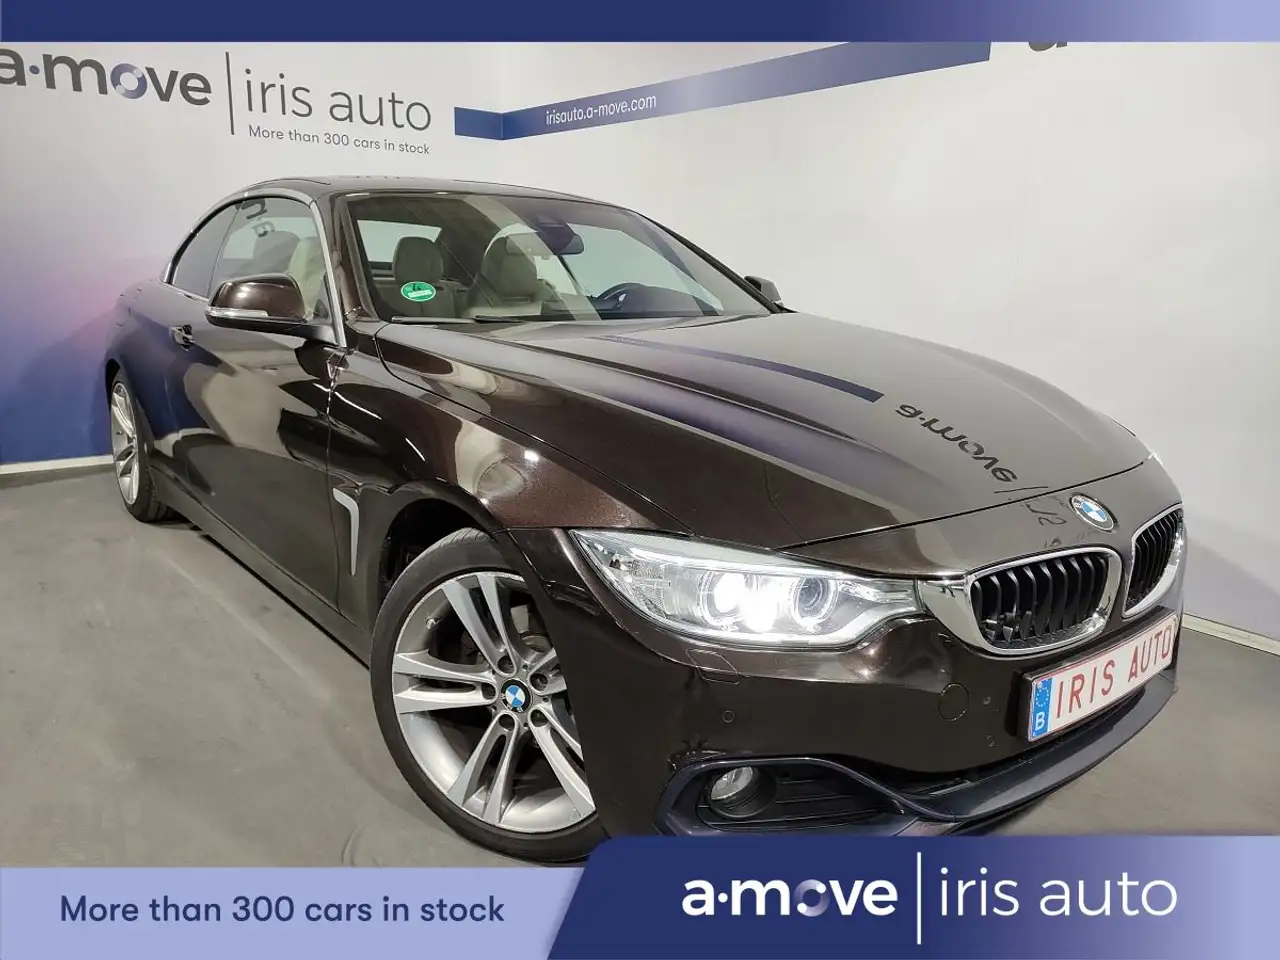 BMW 420 Cabriolet in Bruin tweedehands in Bruxelles voor € 22.990,-